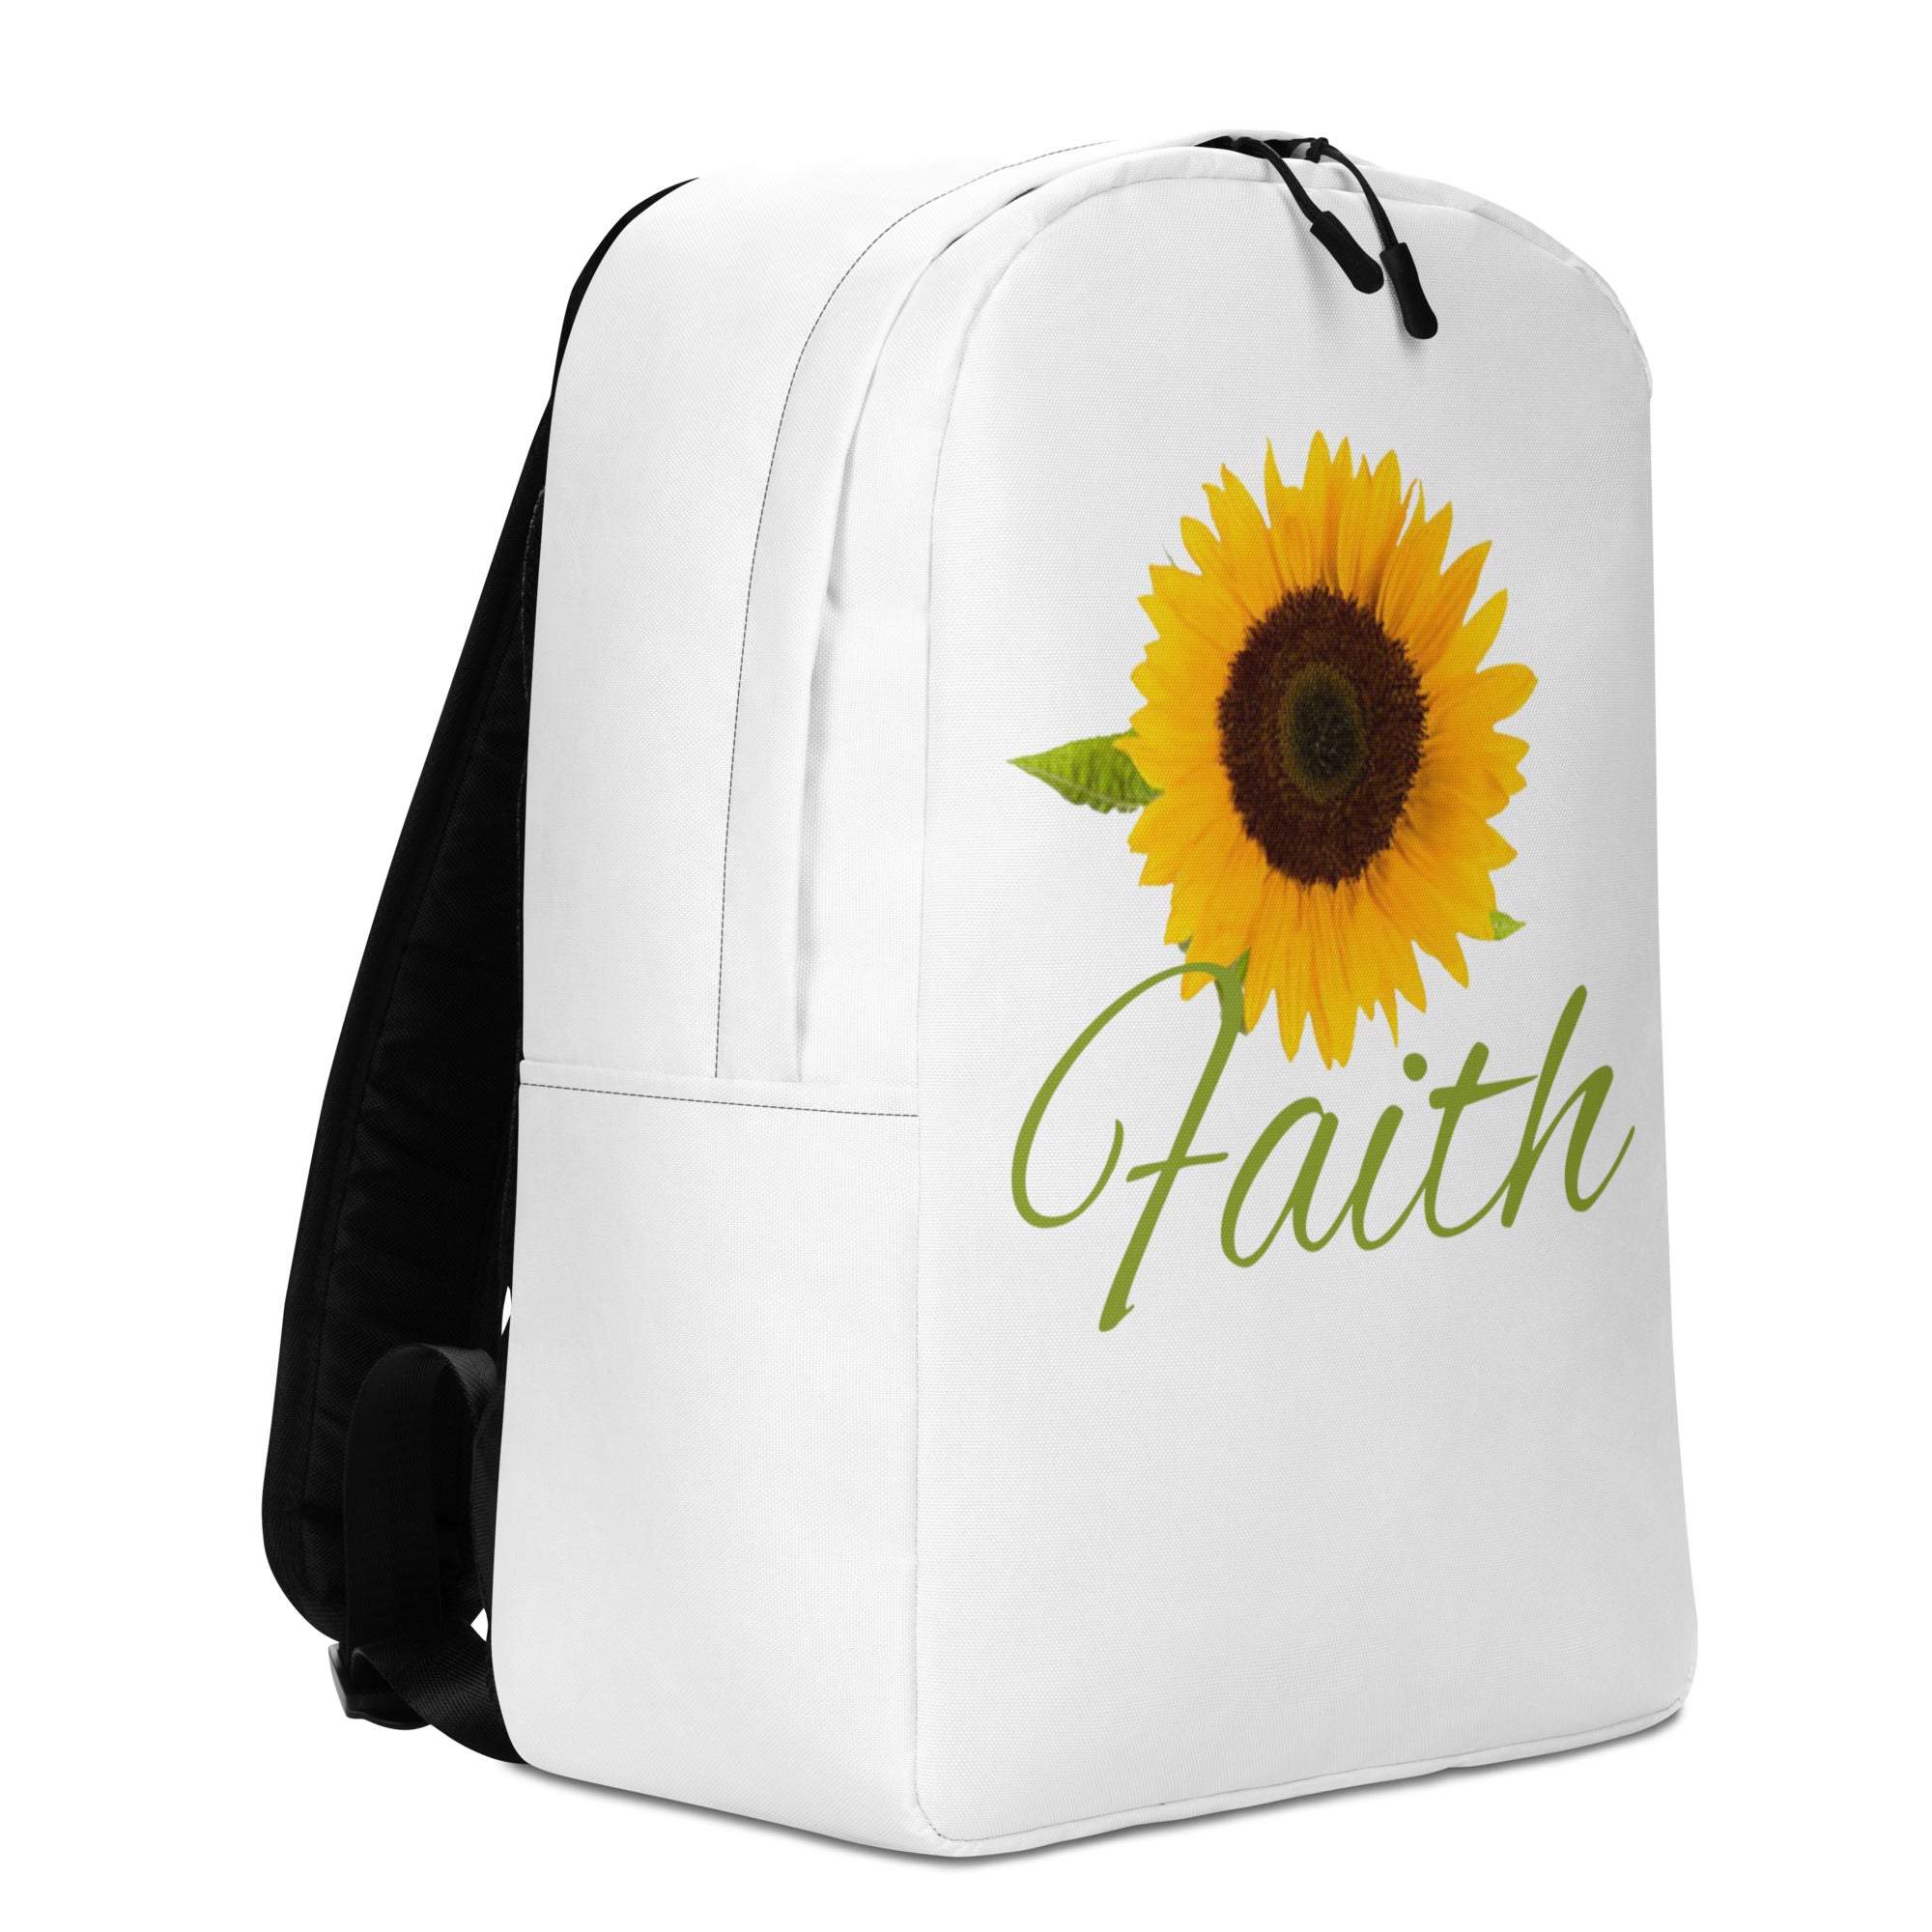 Faith Minimalist Backpack